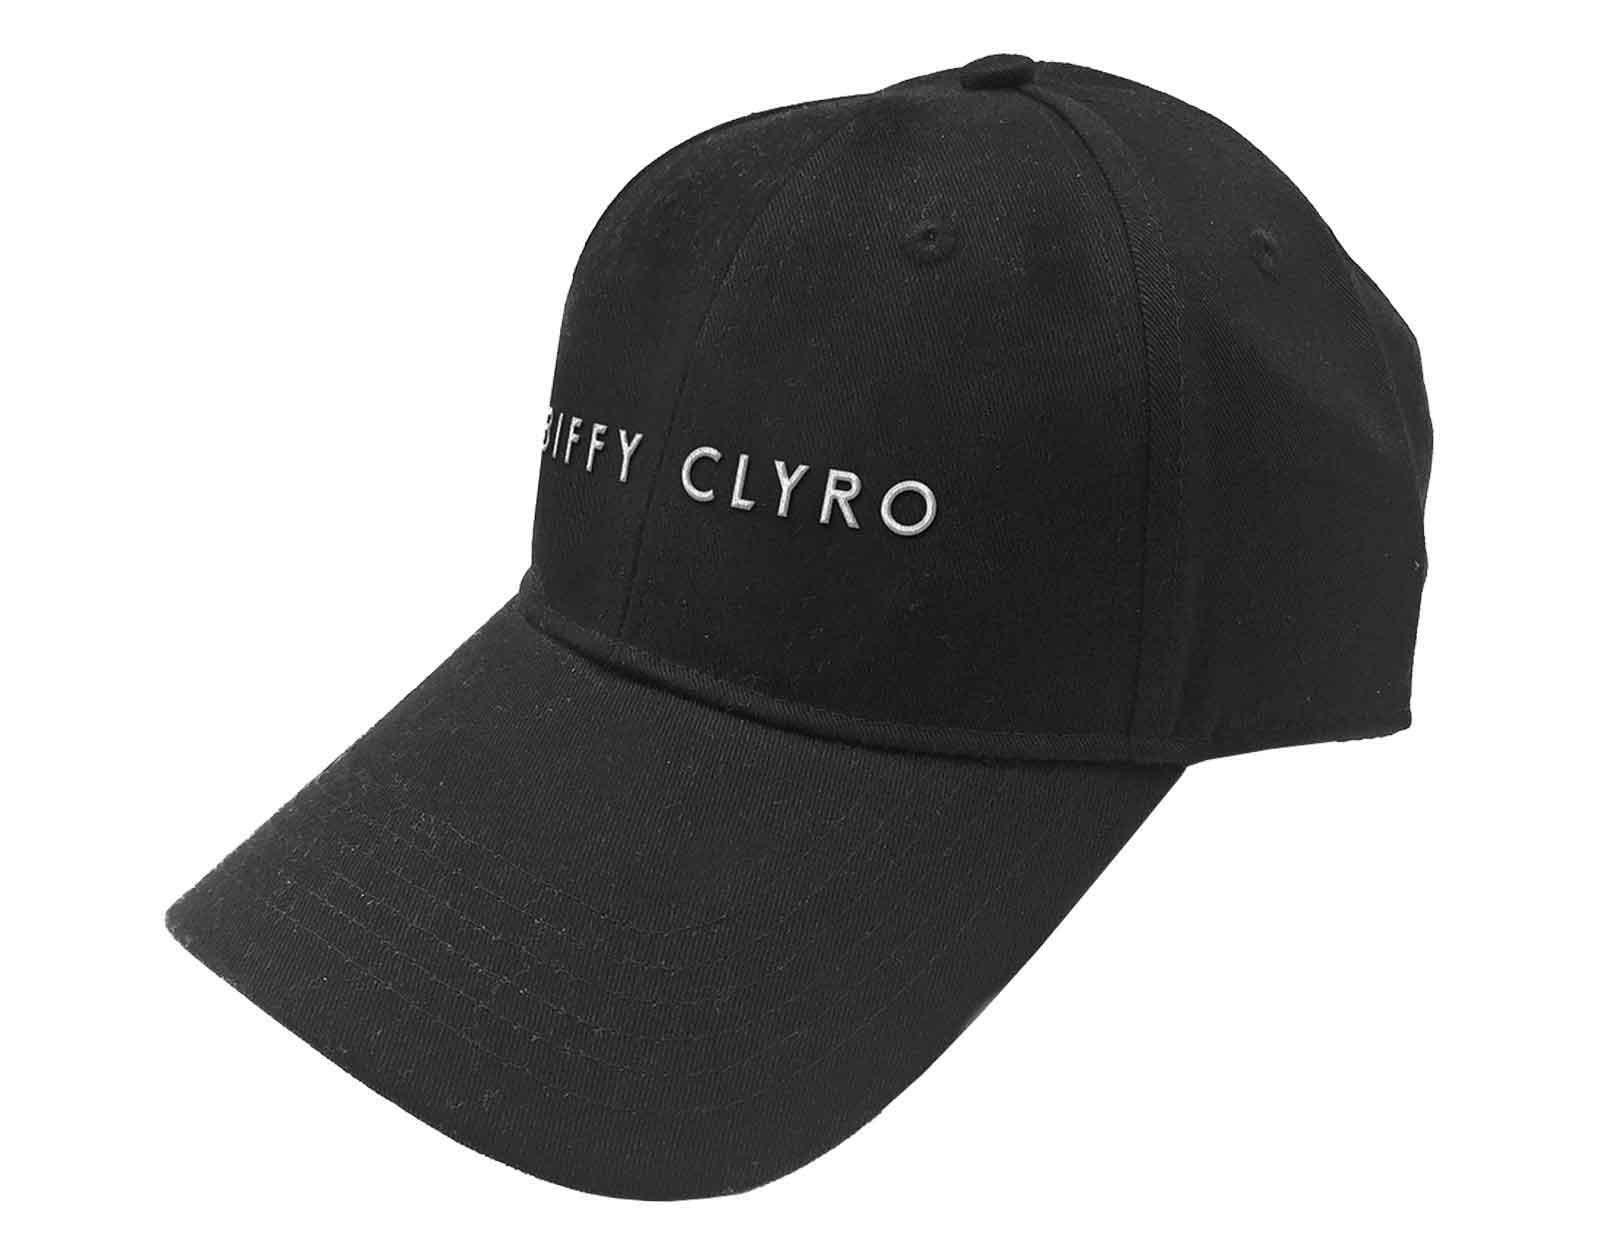 Бейсбольная кепка с текстовым ремешком и логотипом Biffy Clyro, черный biffy clyro виниловая пластинка biffy clyro black chandelier biblical